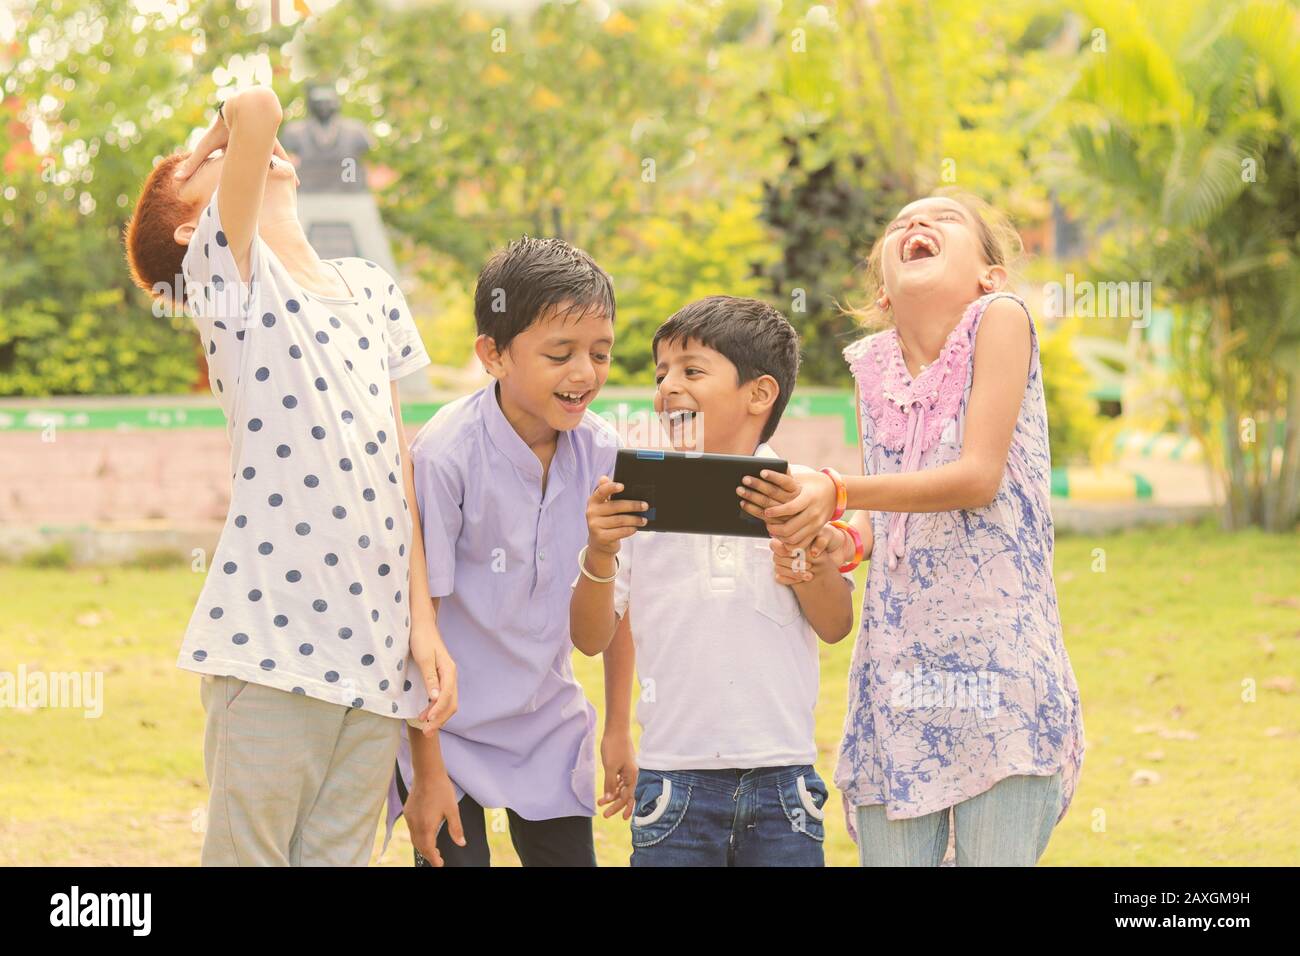 Gruppe Von Kindern lachen, indem sie Medien auf dem Handy sehen - Kinder, die Spaß haben, indem sie auf Smartphone schauen - Konzept von Teenagern, die abhängig sind von Handys und Stockfoto